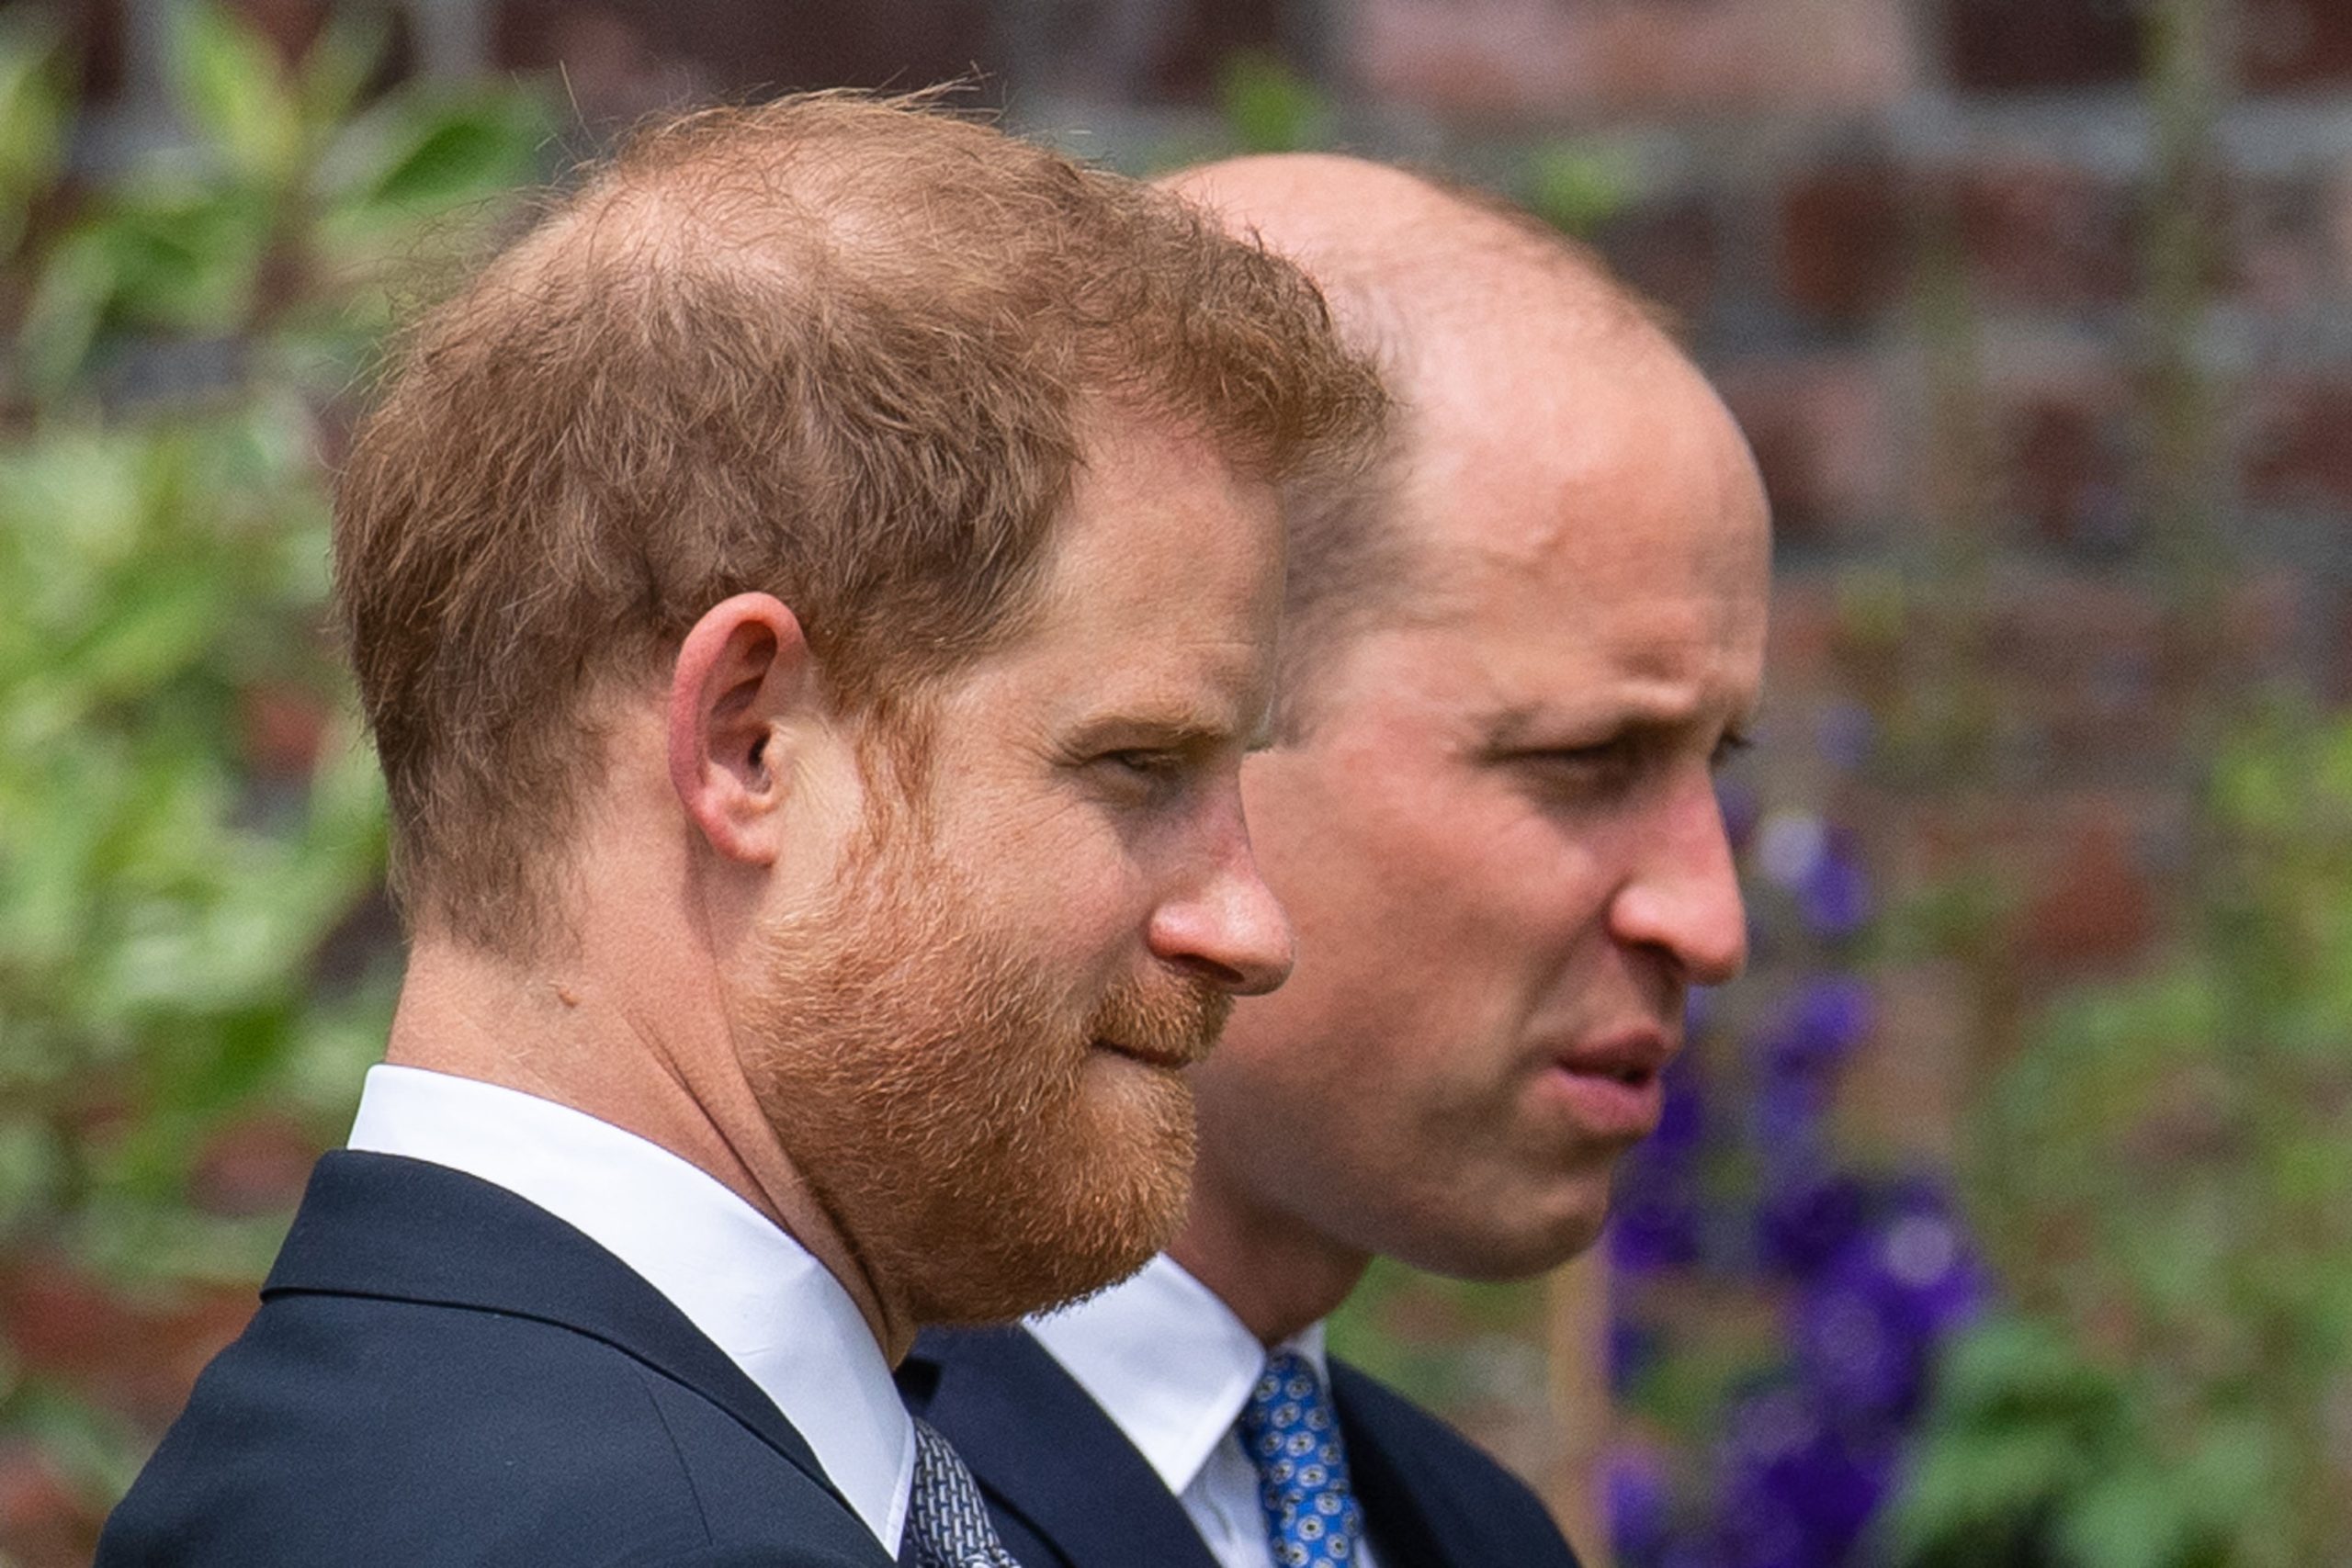 Celebridades/Harry: relação com William, família real, morte de Diana… as suas confidências na televisão inglesa